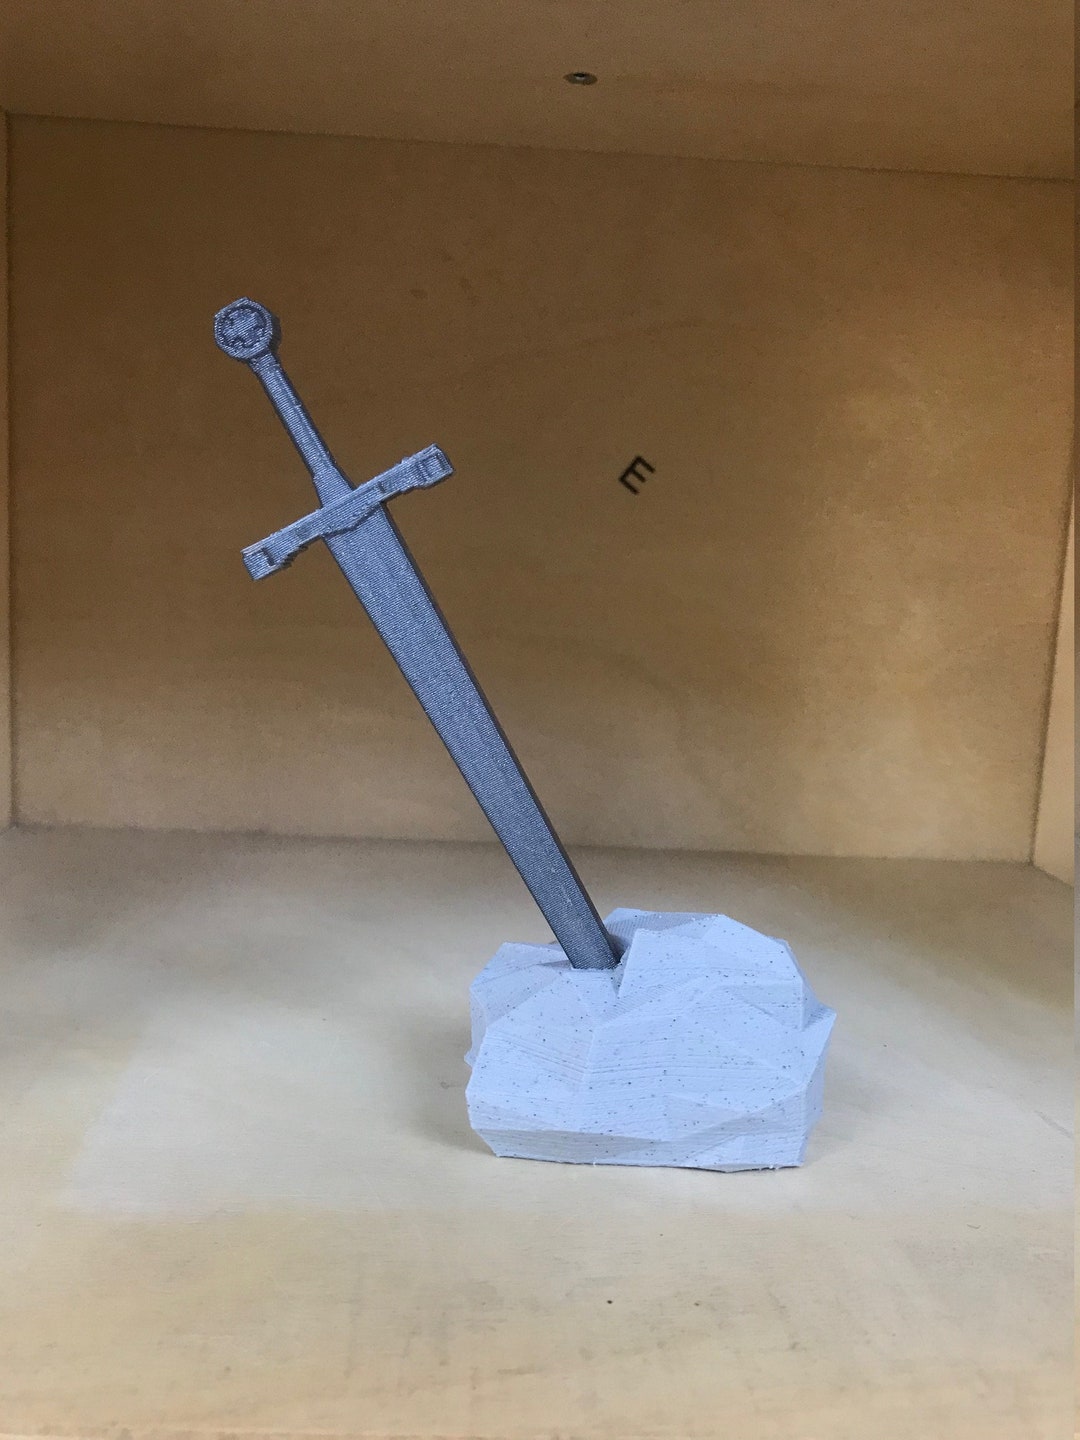 Sword Pen! (DIY 3D Printed) 